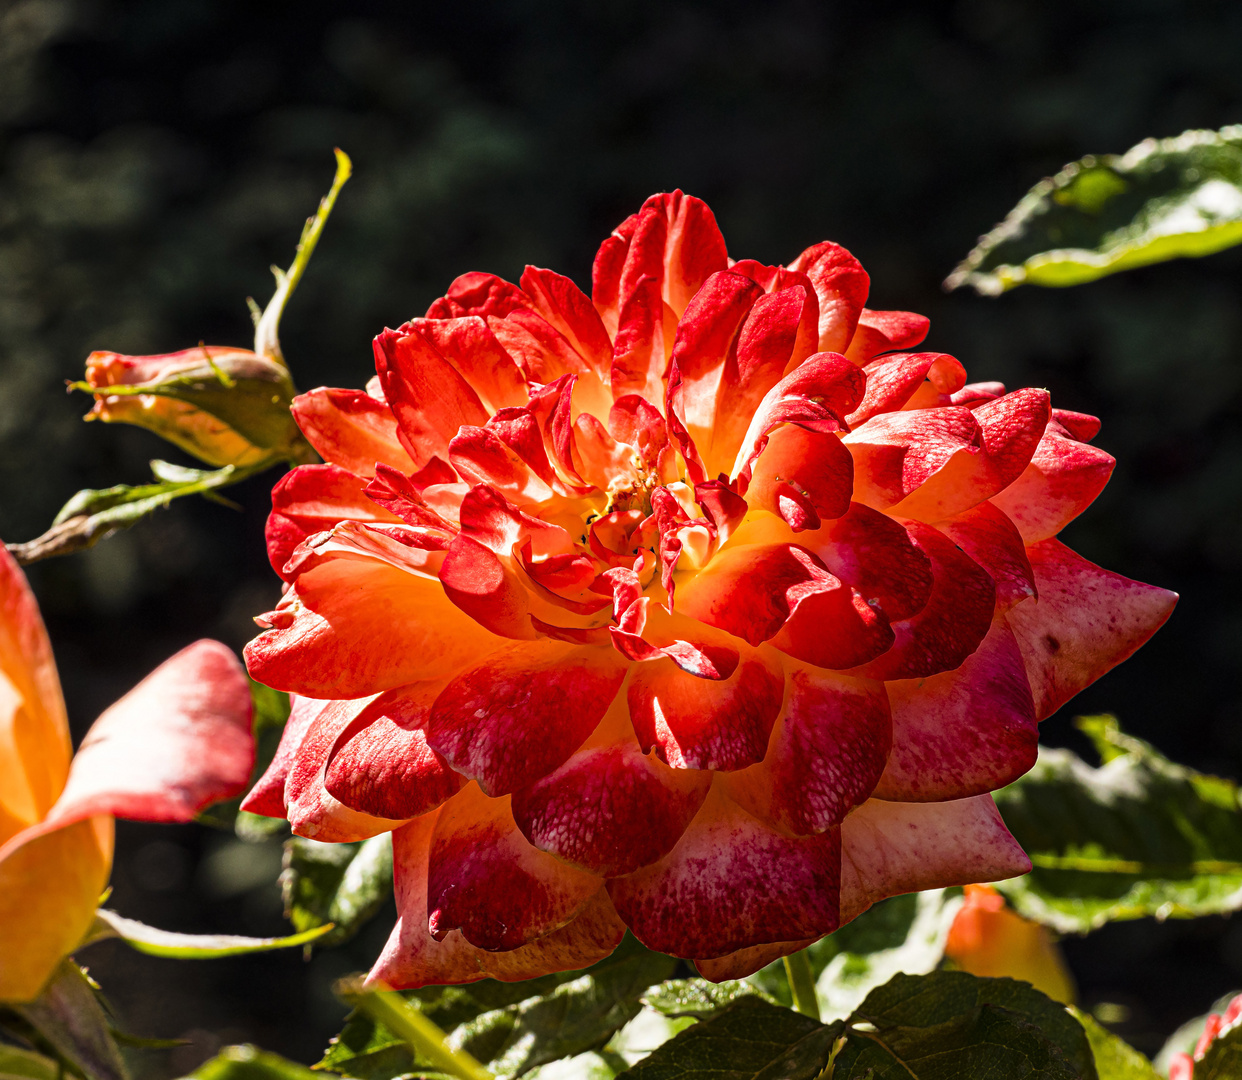 Mittwochsblümchen - Rose1